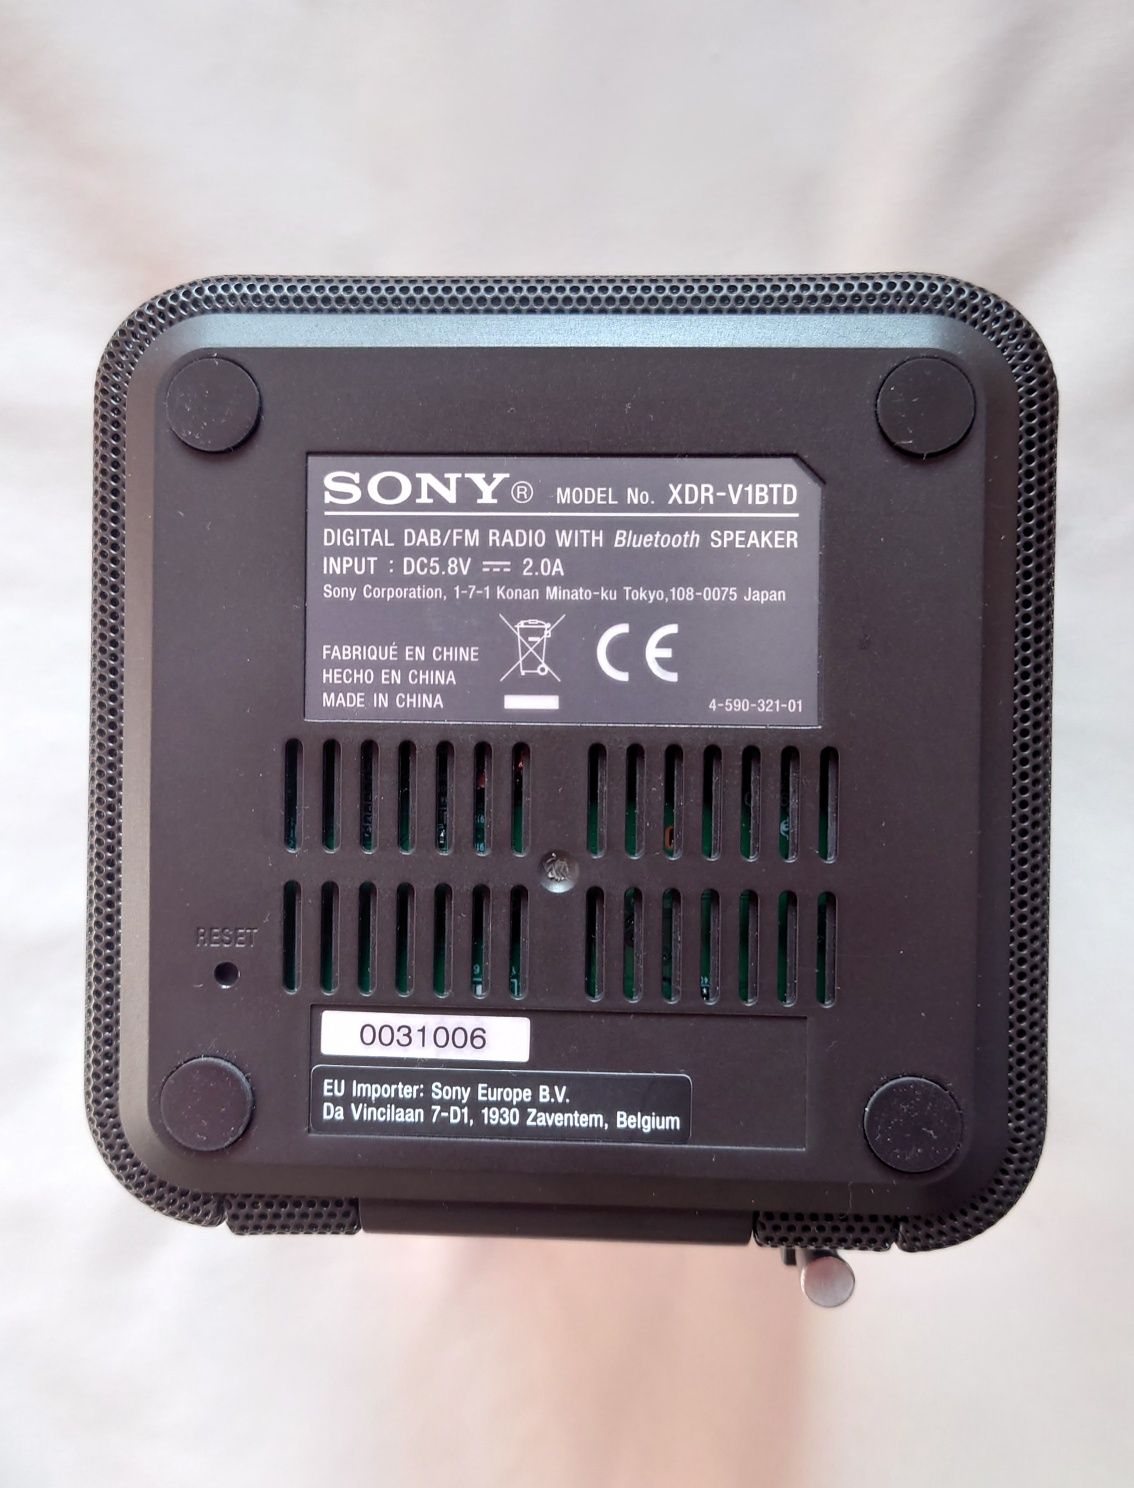 Bluetooth player Sony Radio portabil, XDR-V1BTDB Negru